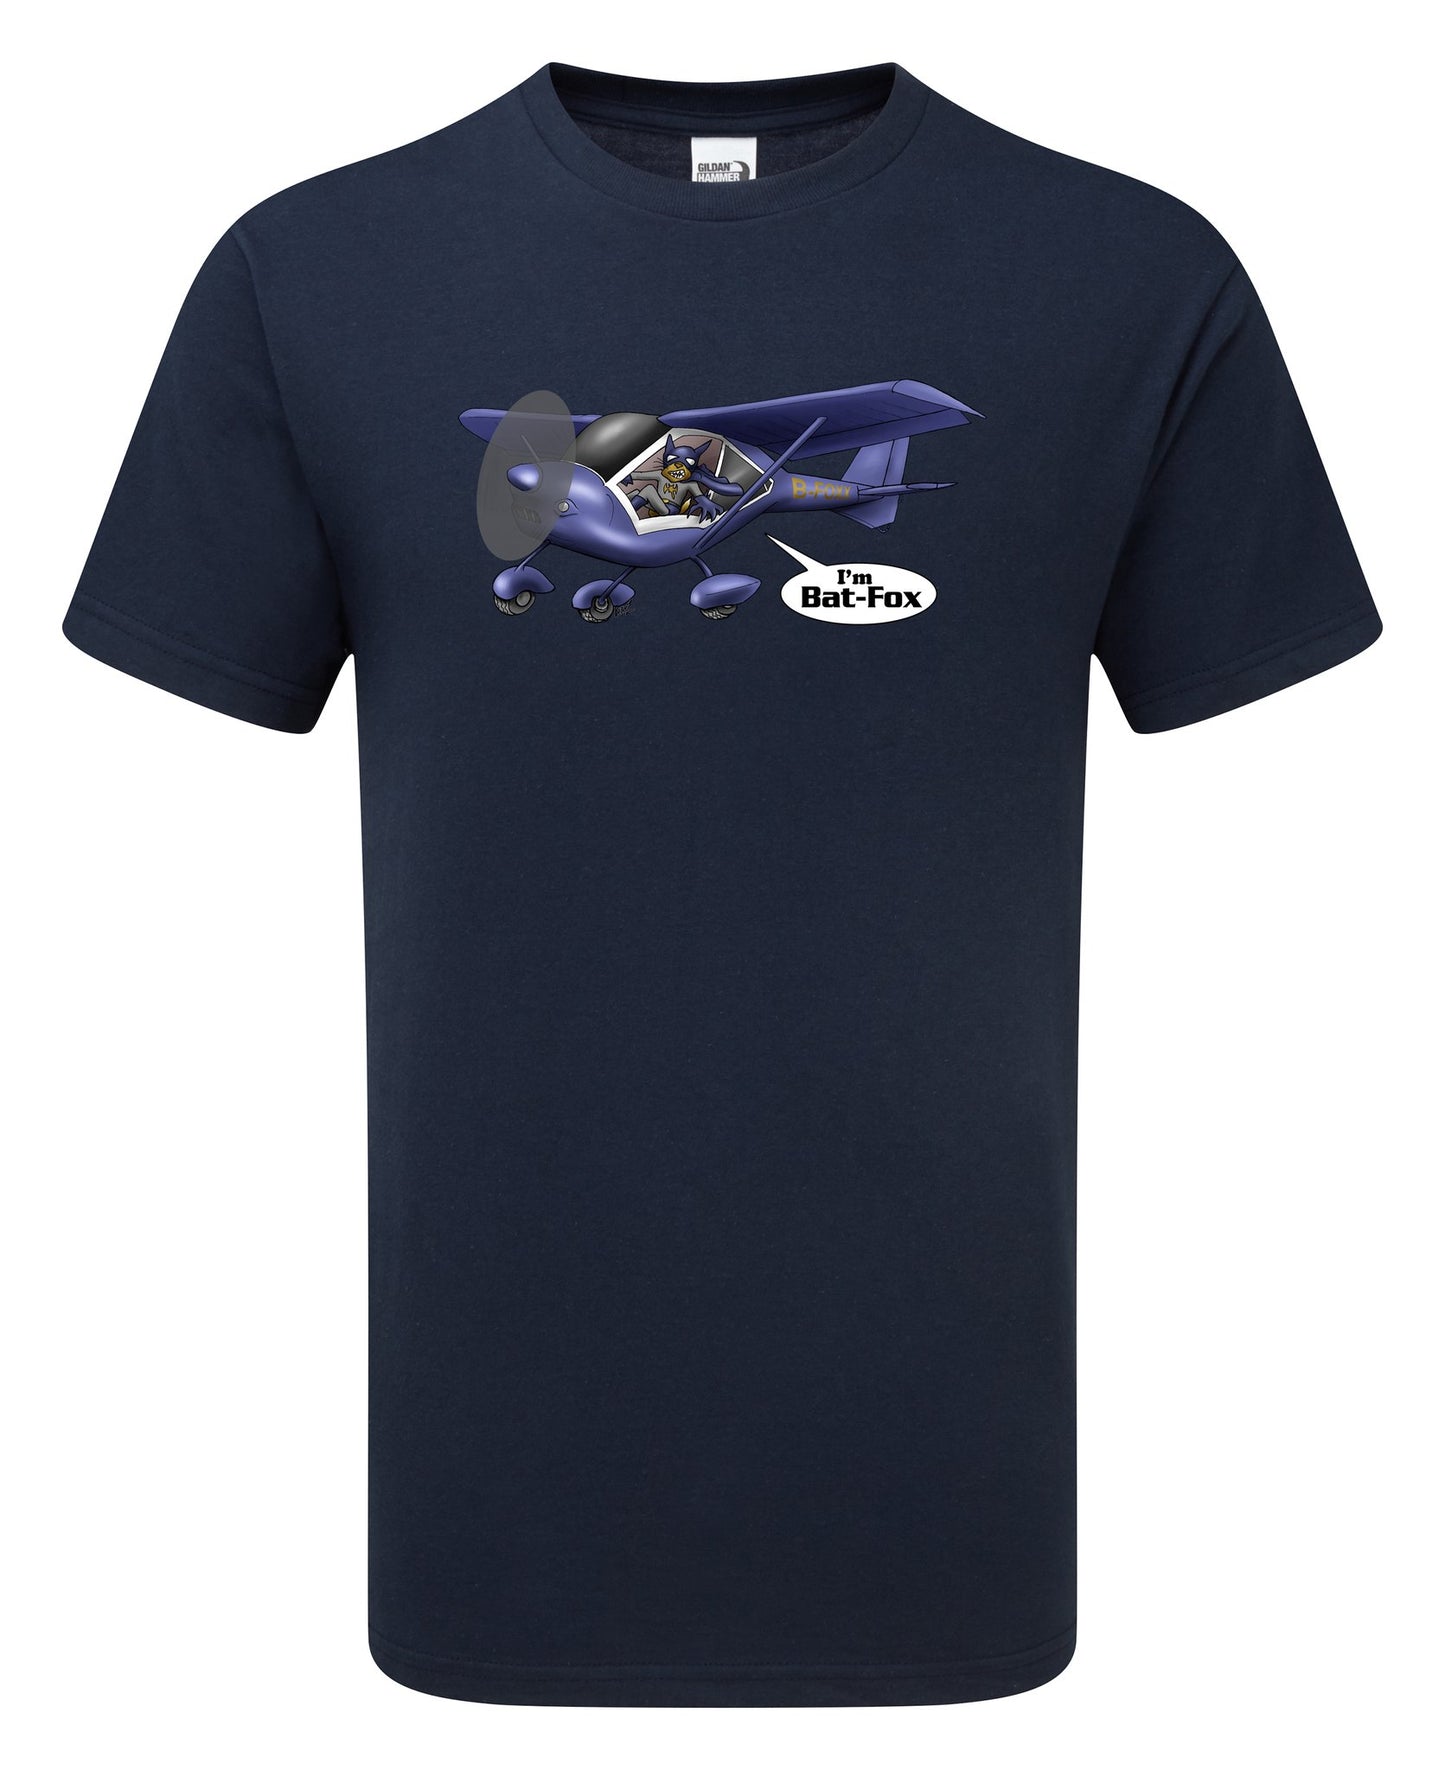 FoxBat Microlight Aeroplane Cartoon T-Shirt